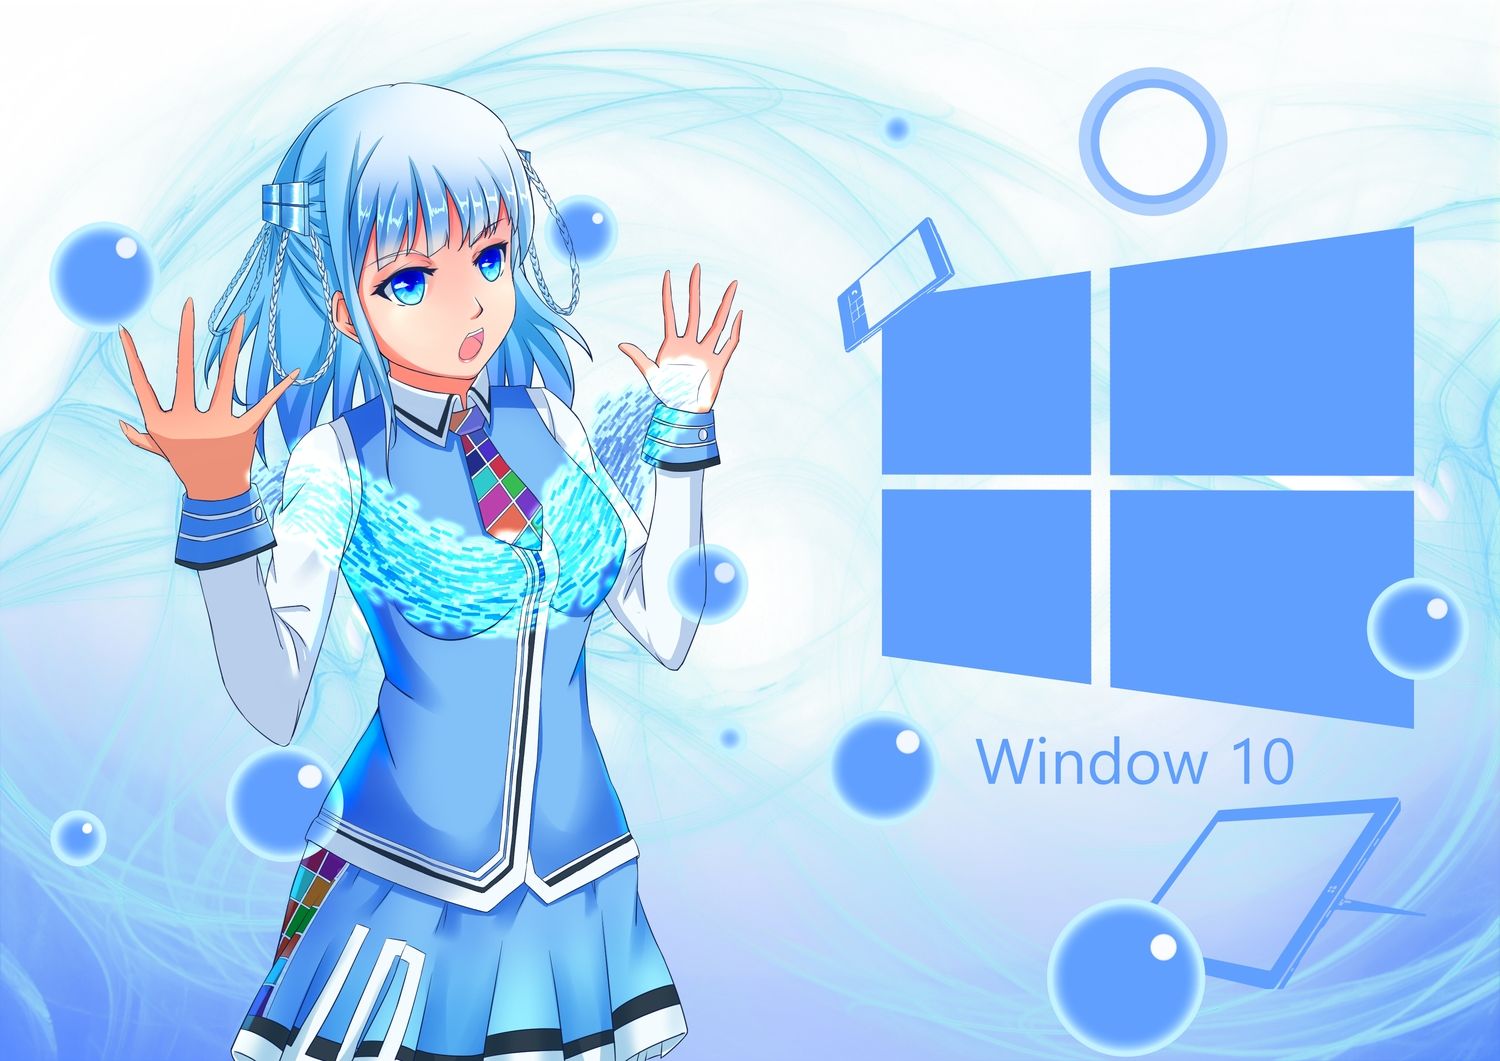 Hình nền anime Windows 10 - Qua mỗi bộ phim anime, chúng ta sẽ tìm thấy những hình ảnh đẹp làm say đắm lòng người. Giờ đây, hãy để hình nền anime trang trí cho màn hình Windows 10 của bạn trở nên sống động và đầy màu sắc hơn!